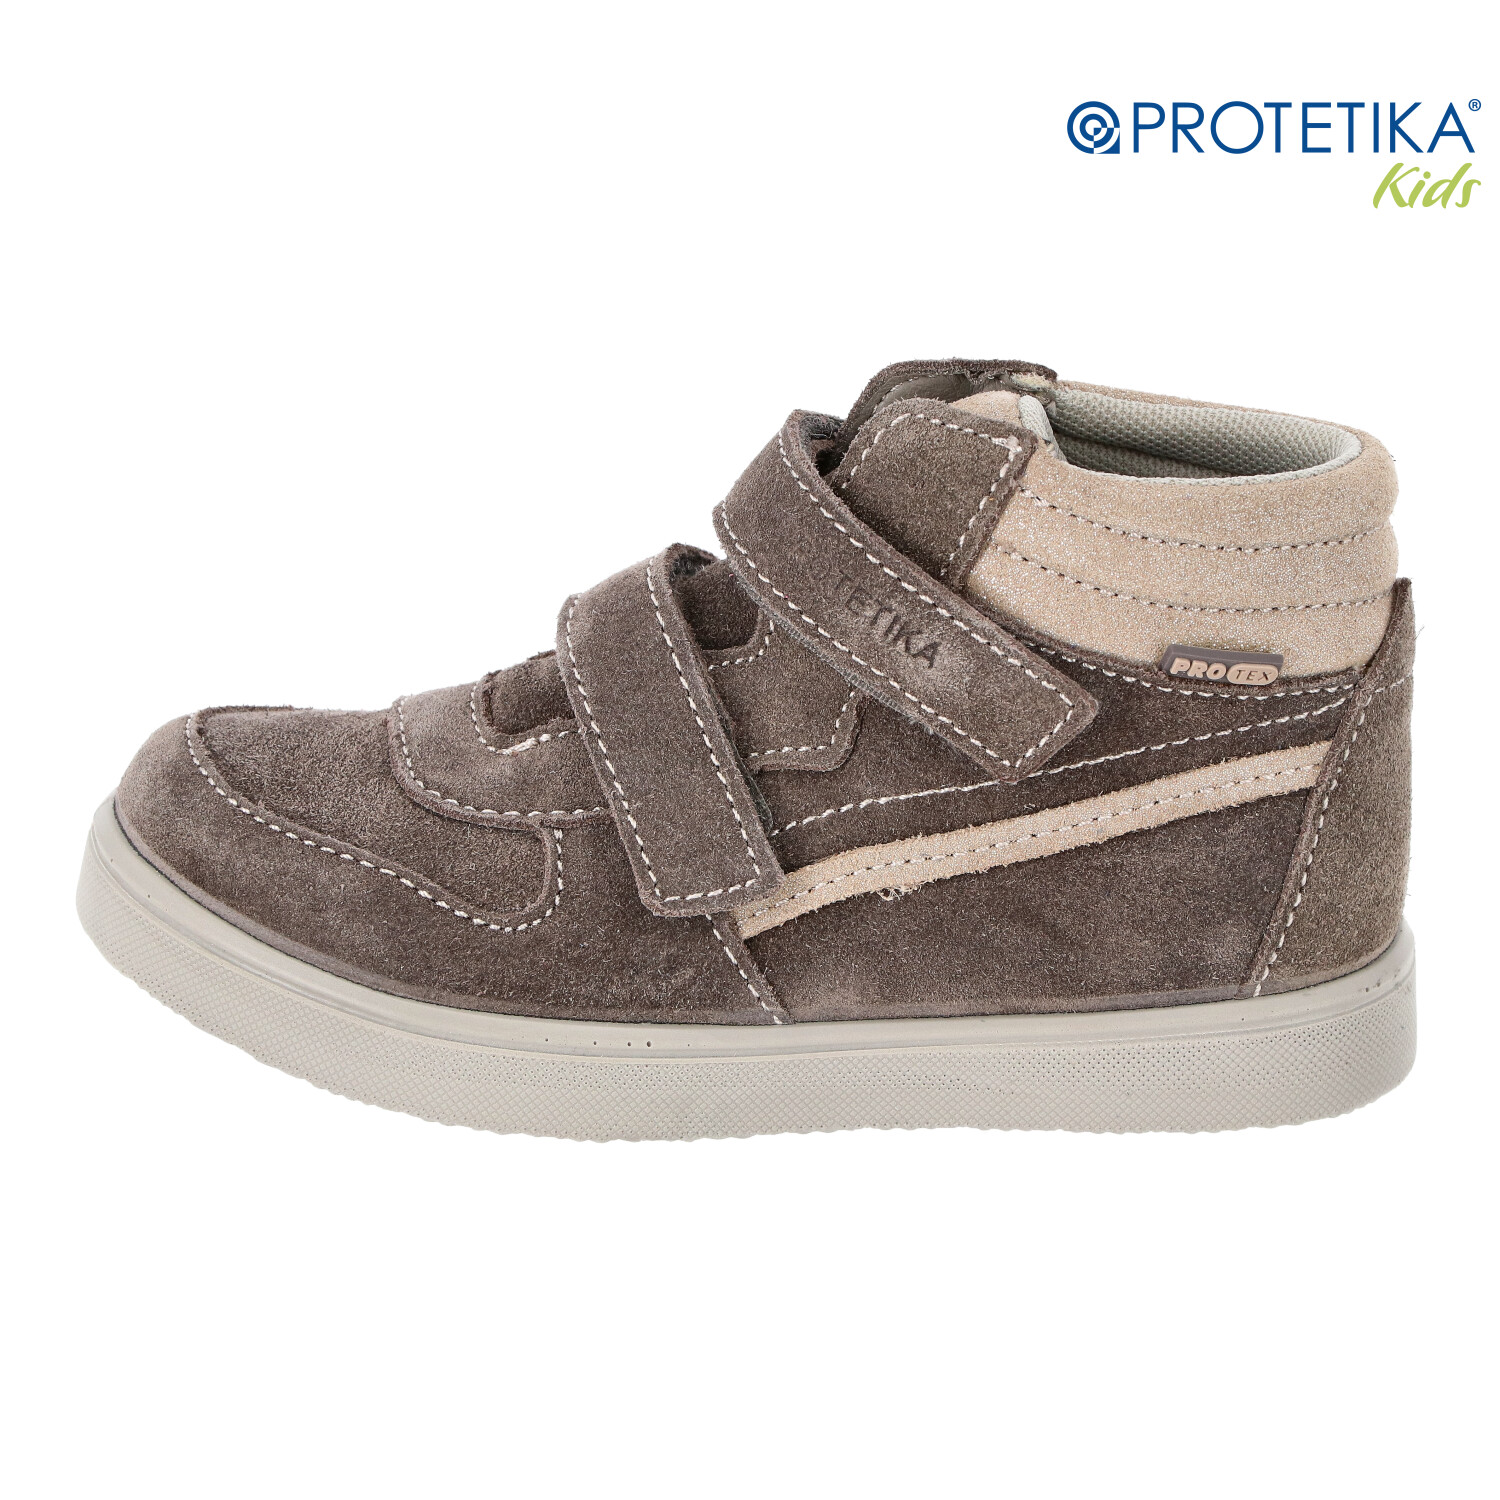 Protetika - topánky s membránou PRO-tex TABY grey